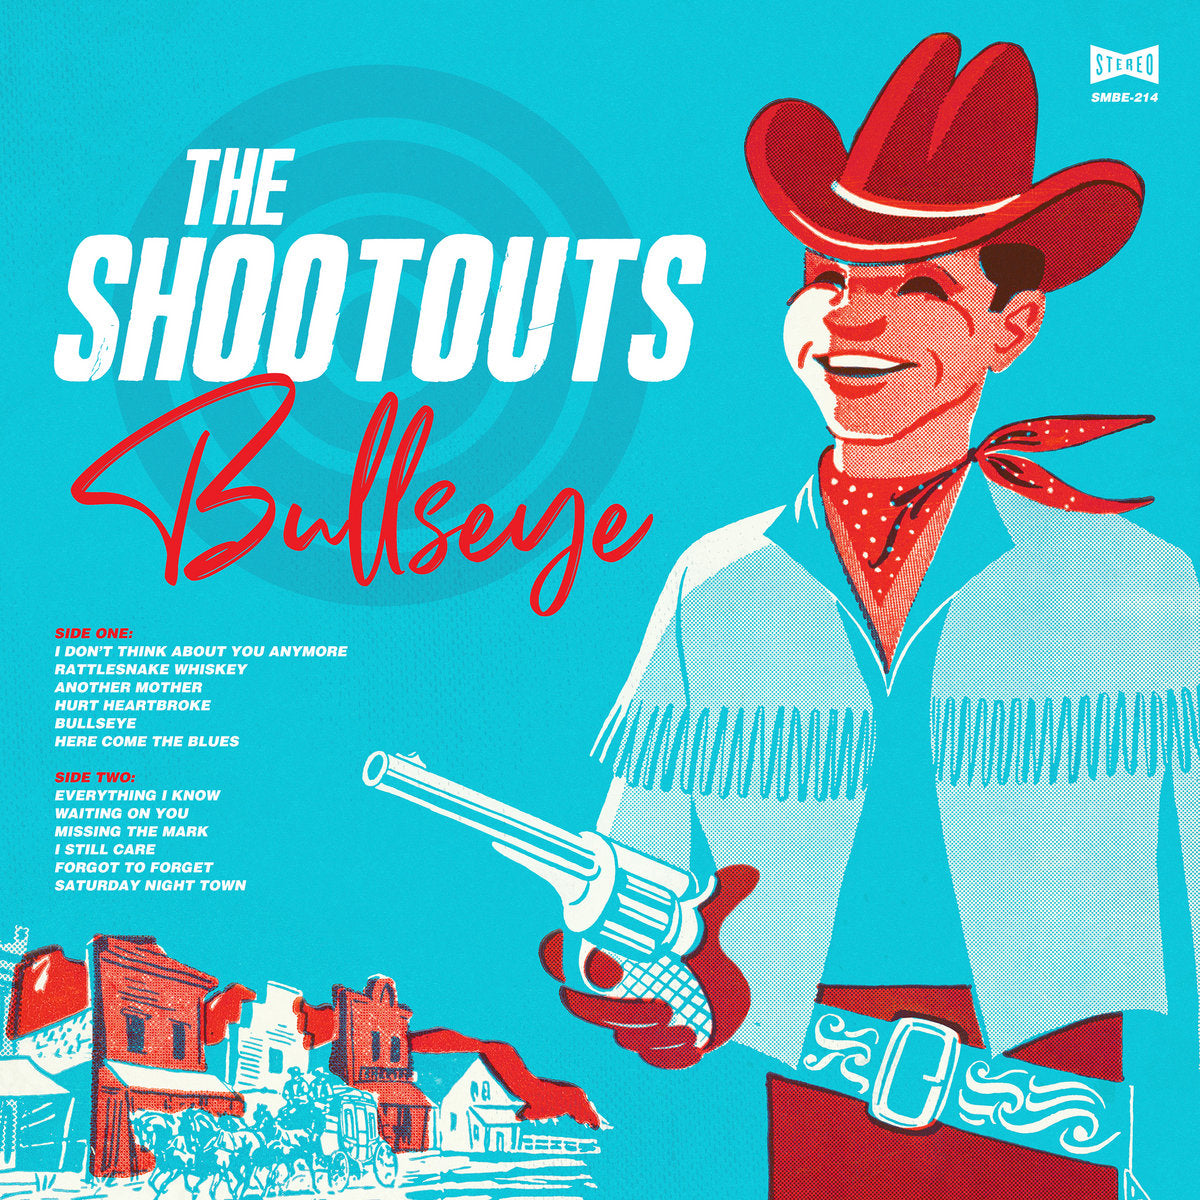 Shootouts, "Bullseye" (Aqua Vinyl)